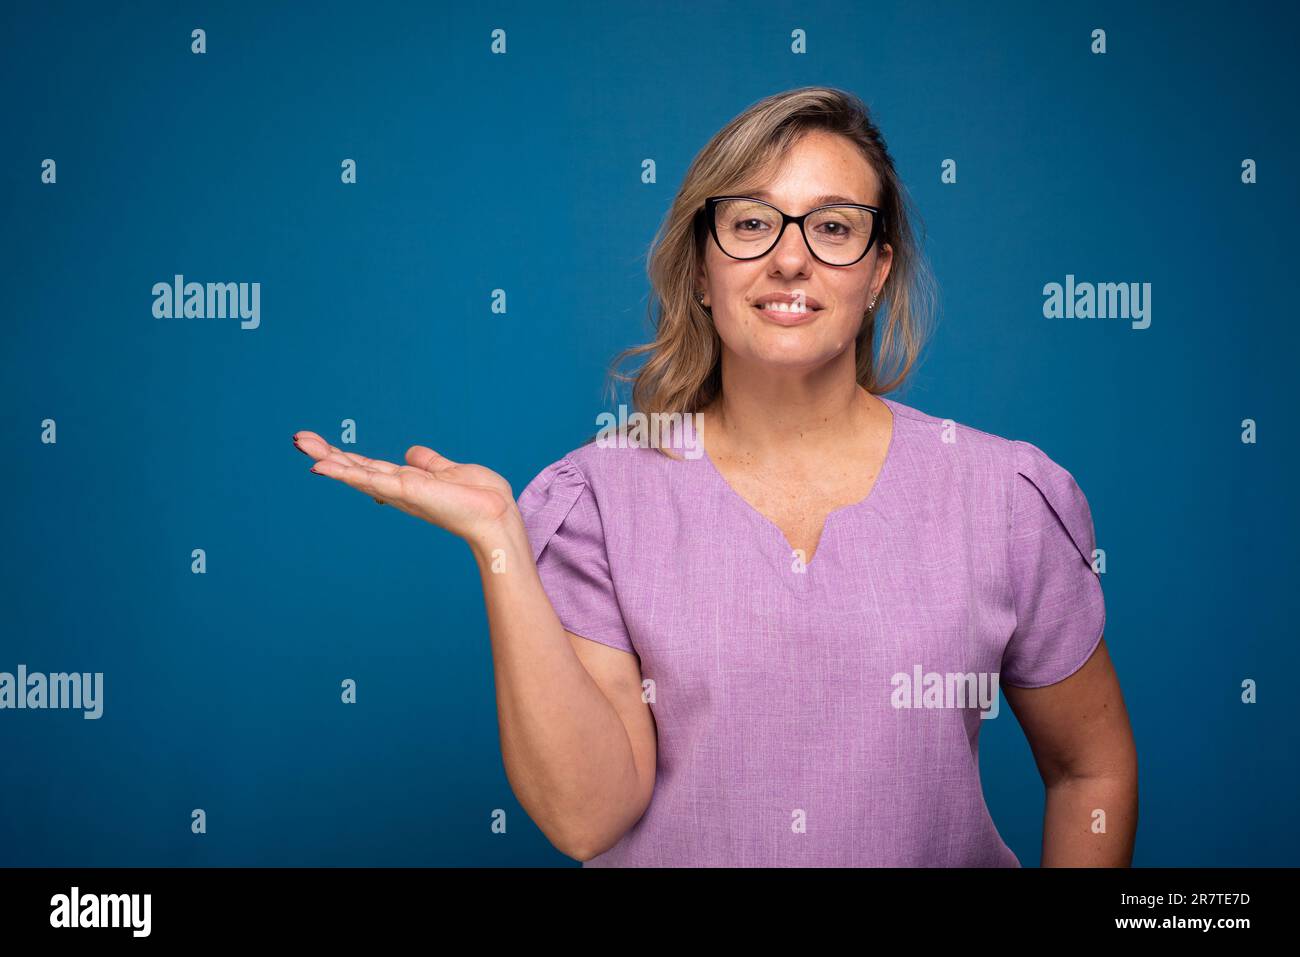 Bella donna brasiliana, bionda, indossando uniforme infermiera lilla e facendo gesti di mano. Persona positiva. Isoald su sfondo blu. Foto Stock